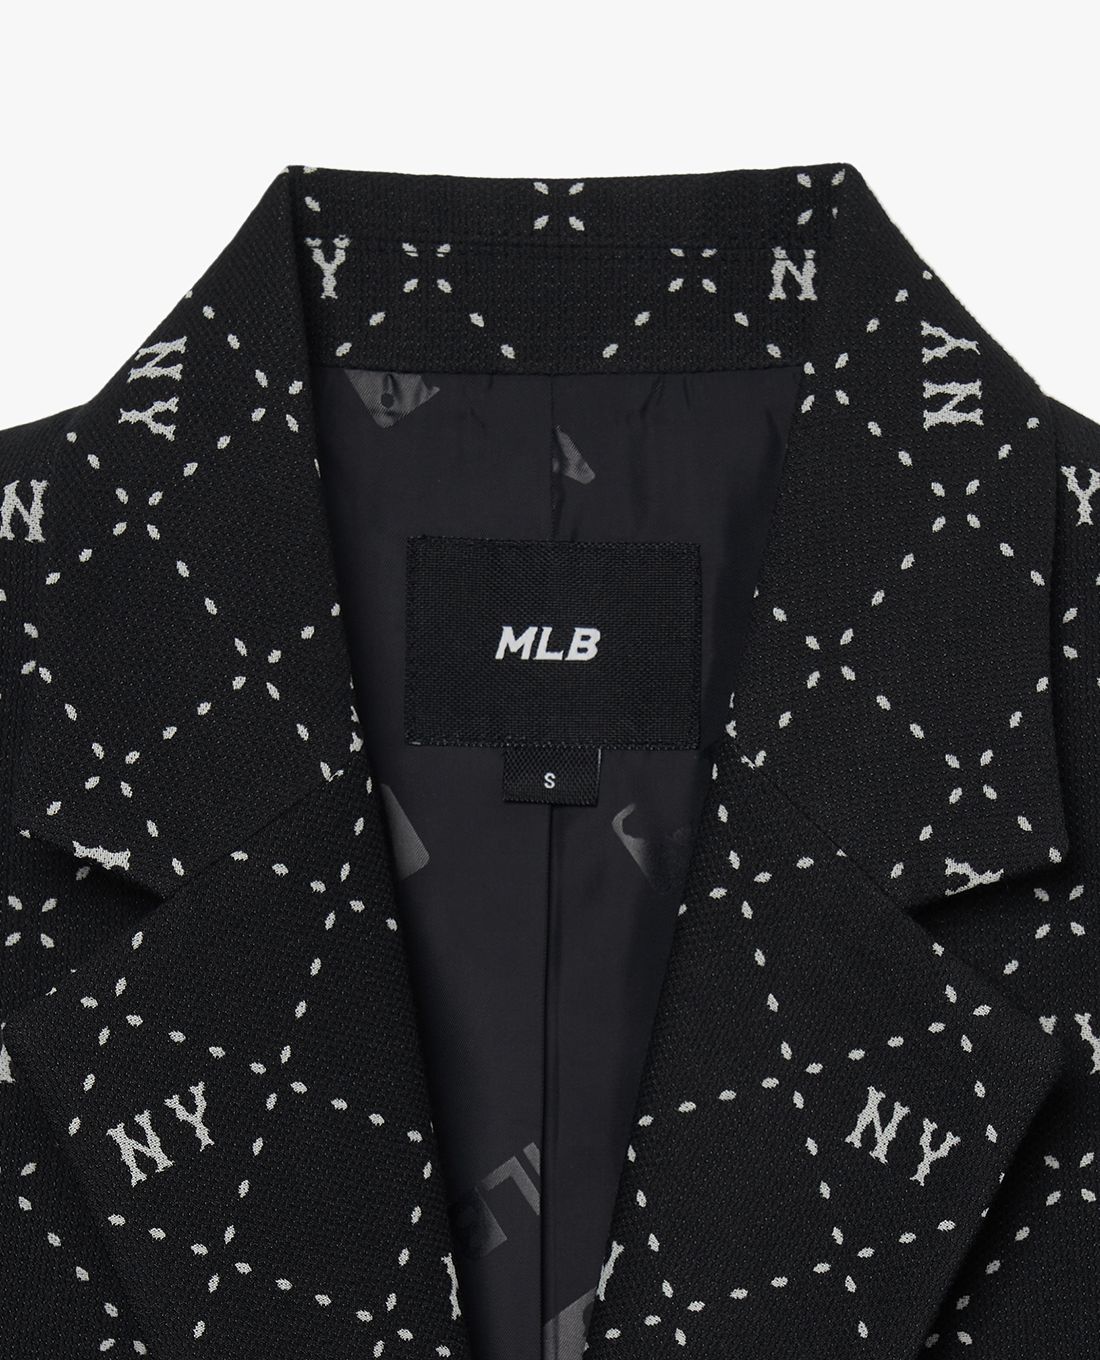 Chia sẻ với hơn 78 về áo vest MLB hay nhất  cdgdbentreeduvn